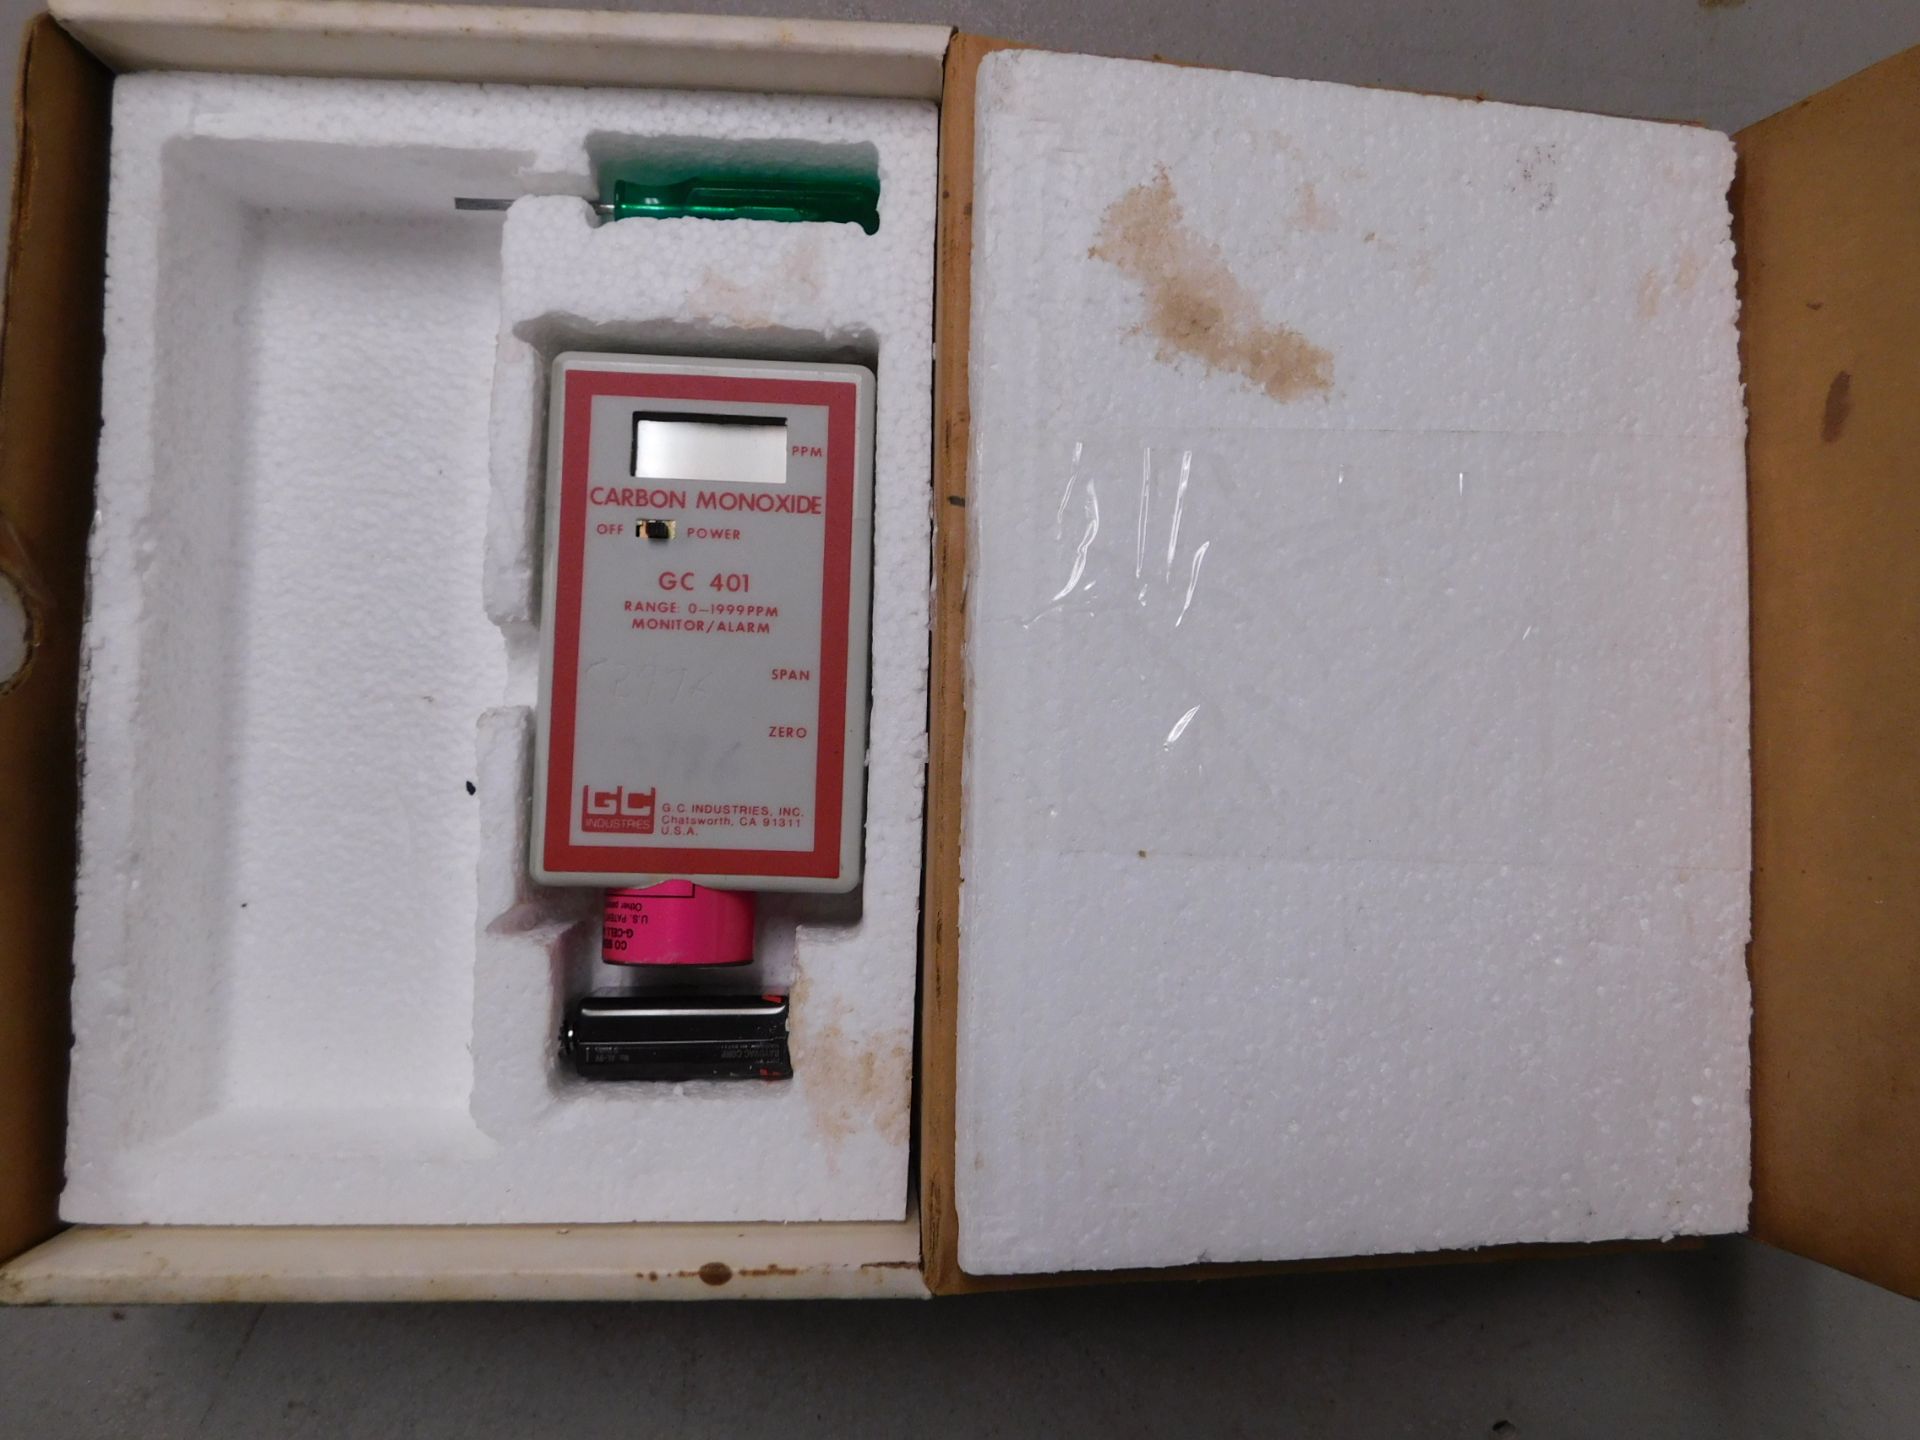 GC 401 Carbon Monoxide Tester